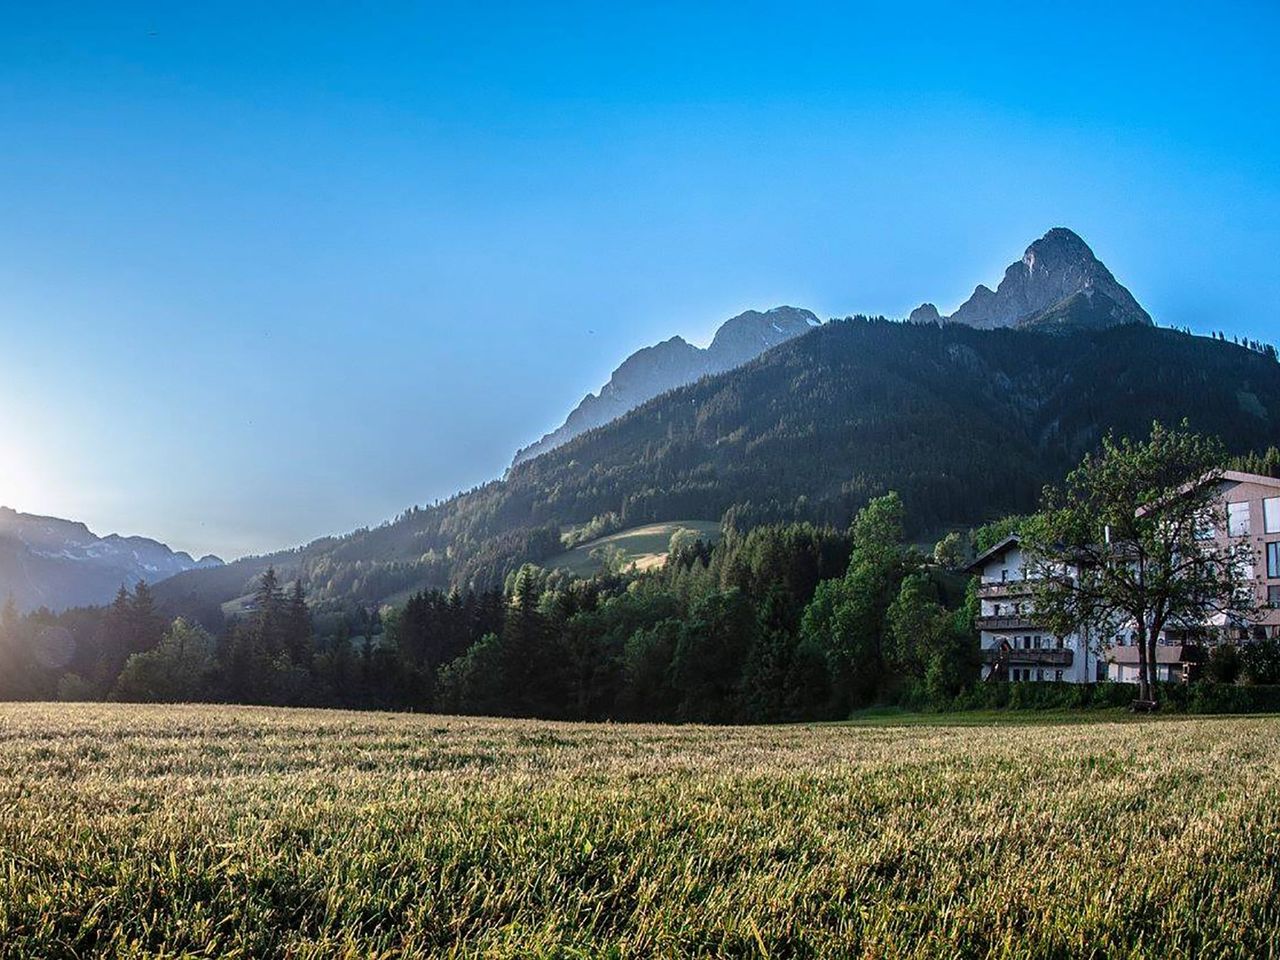 Bergische Auszeit im Salzburger Land - 2 Tage mit HP